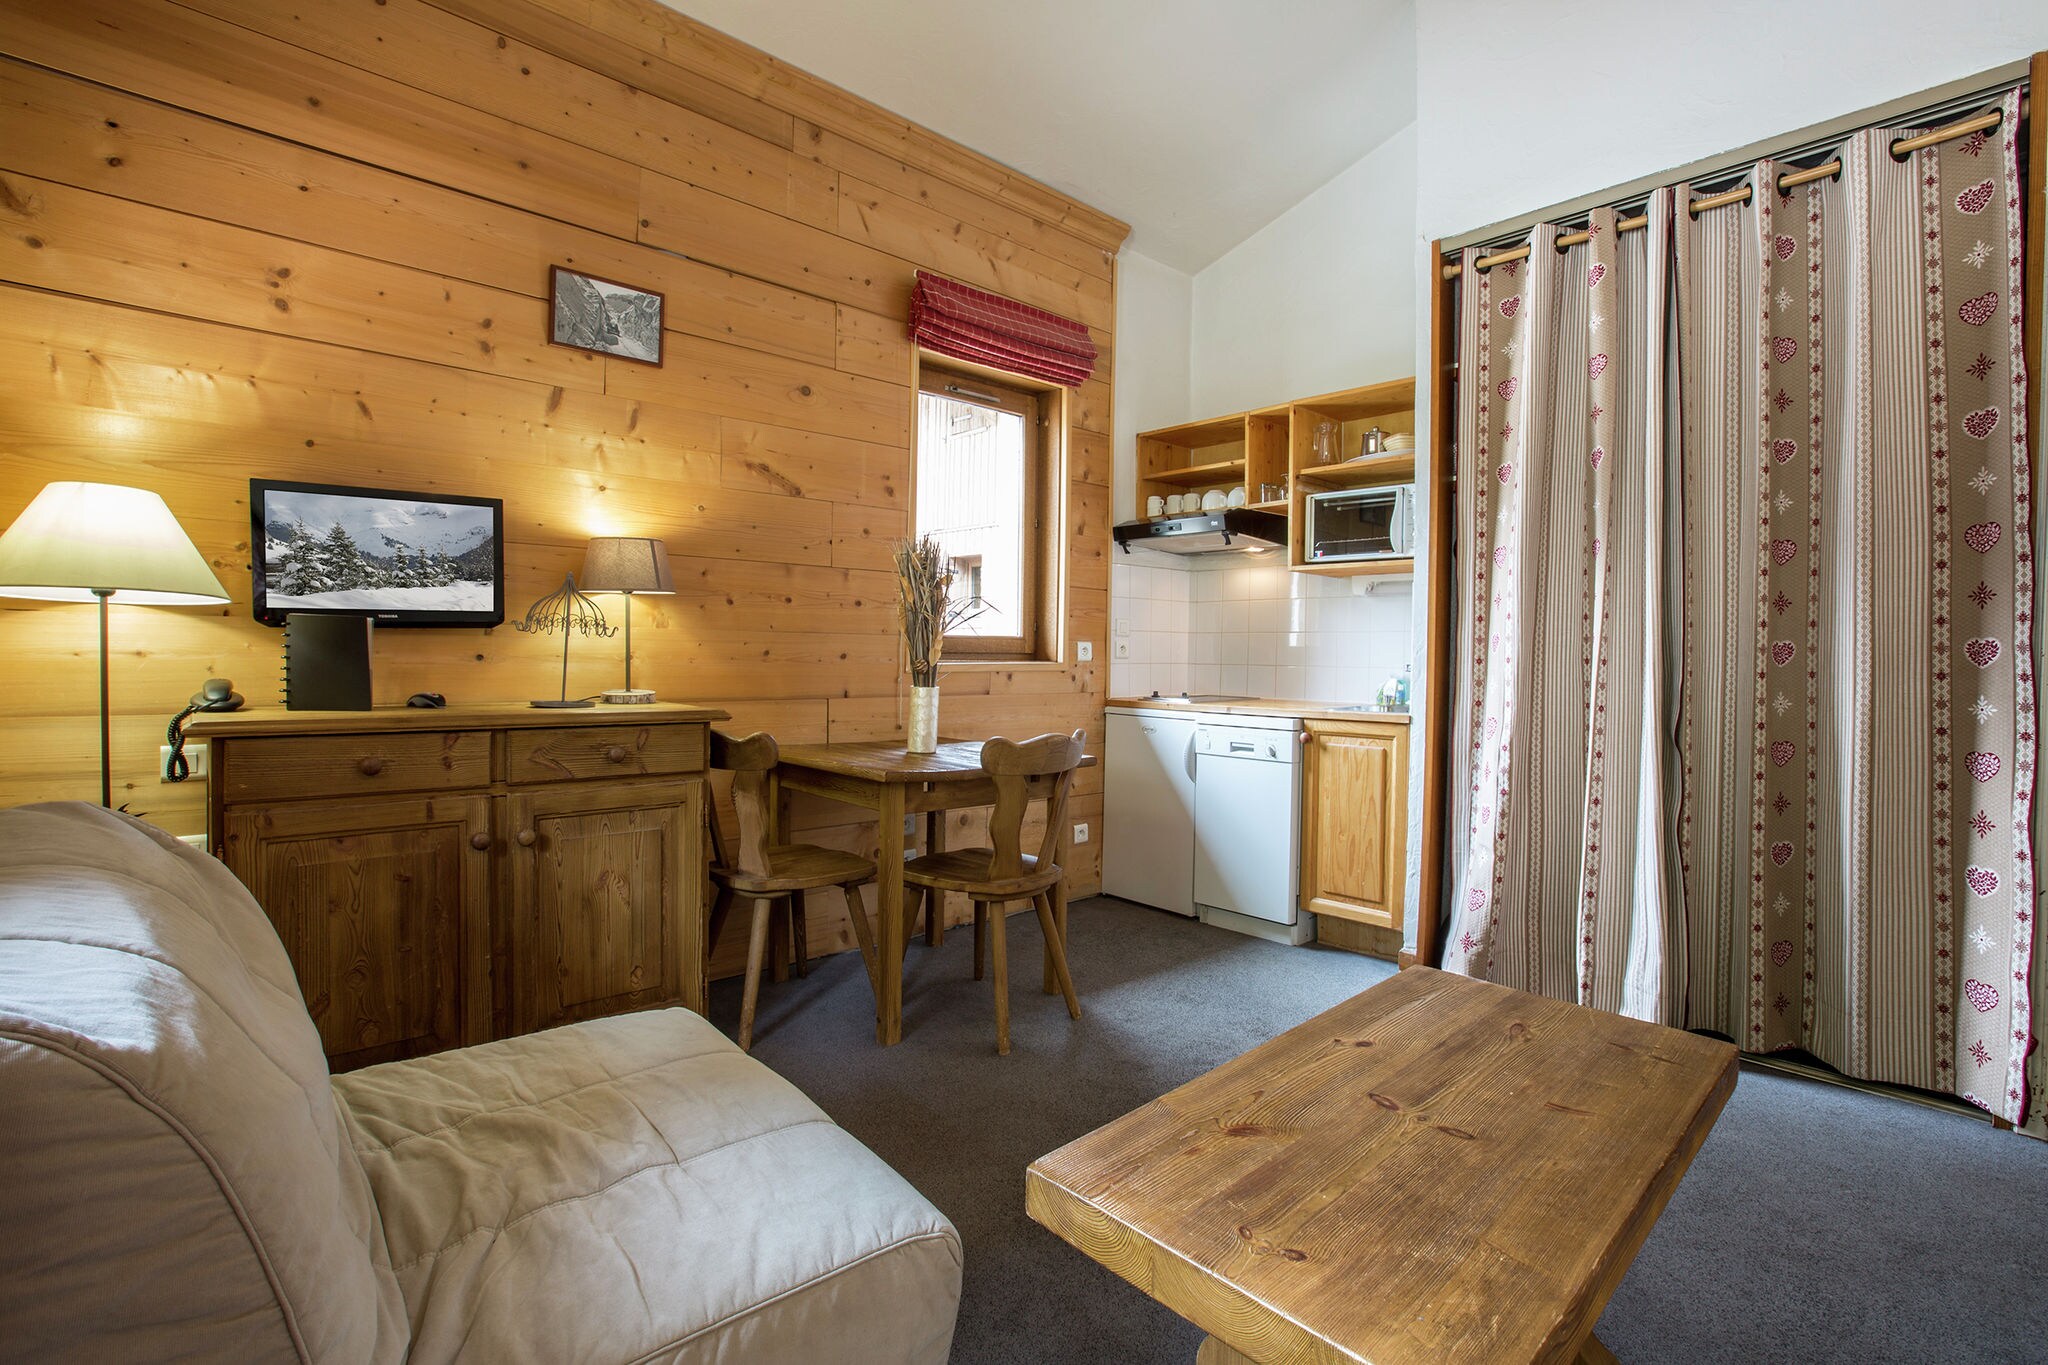 Appartement savoyard et rustique au cœur du Val d'Isère